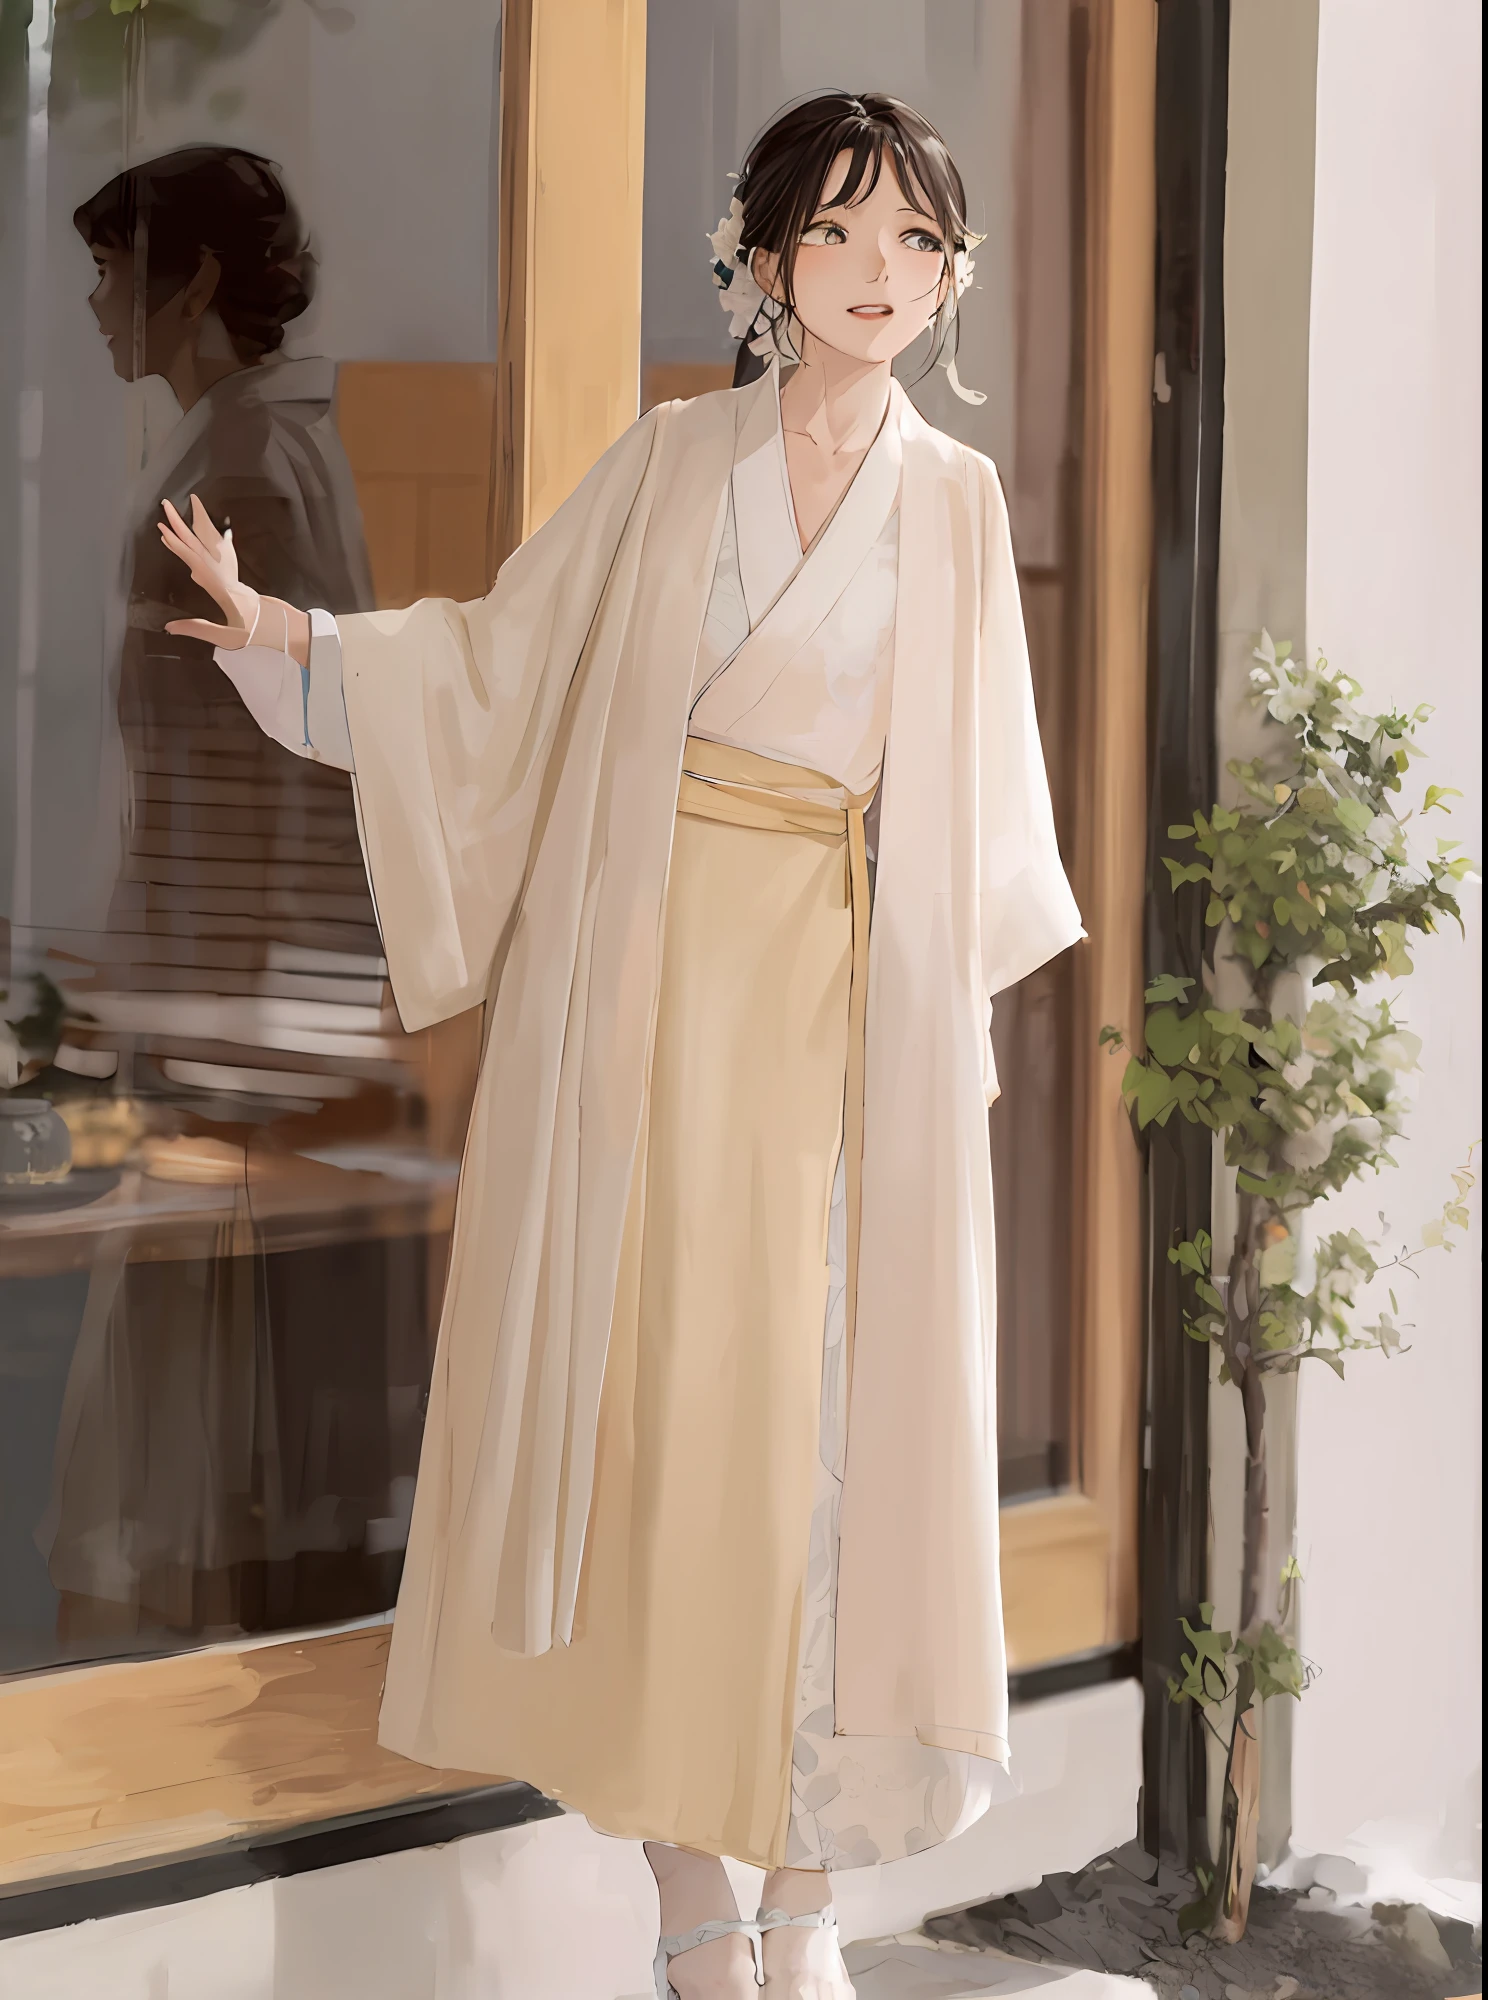 흰색 기모노를 입고 건물 밖에 서 있는 아라페 여성, white 한푸, 간단한 가운을 입고, wearing a long 흐르는 가운, 한푸, 창백한 색의 기모노, 흐르는 마법의 로브, 간단한 가운을 입고, 길고 아름답게 흐르는 기모노, 흐르는 가운s, 흐르는 가운, 흐르는 머리카락과 긴 가운, wearing 흐르는 가운s, 일본 옷, 길게 흐르는 흰색 가운